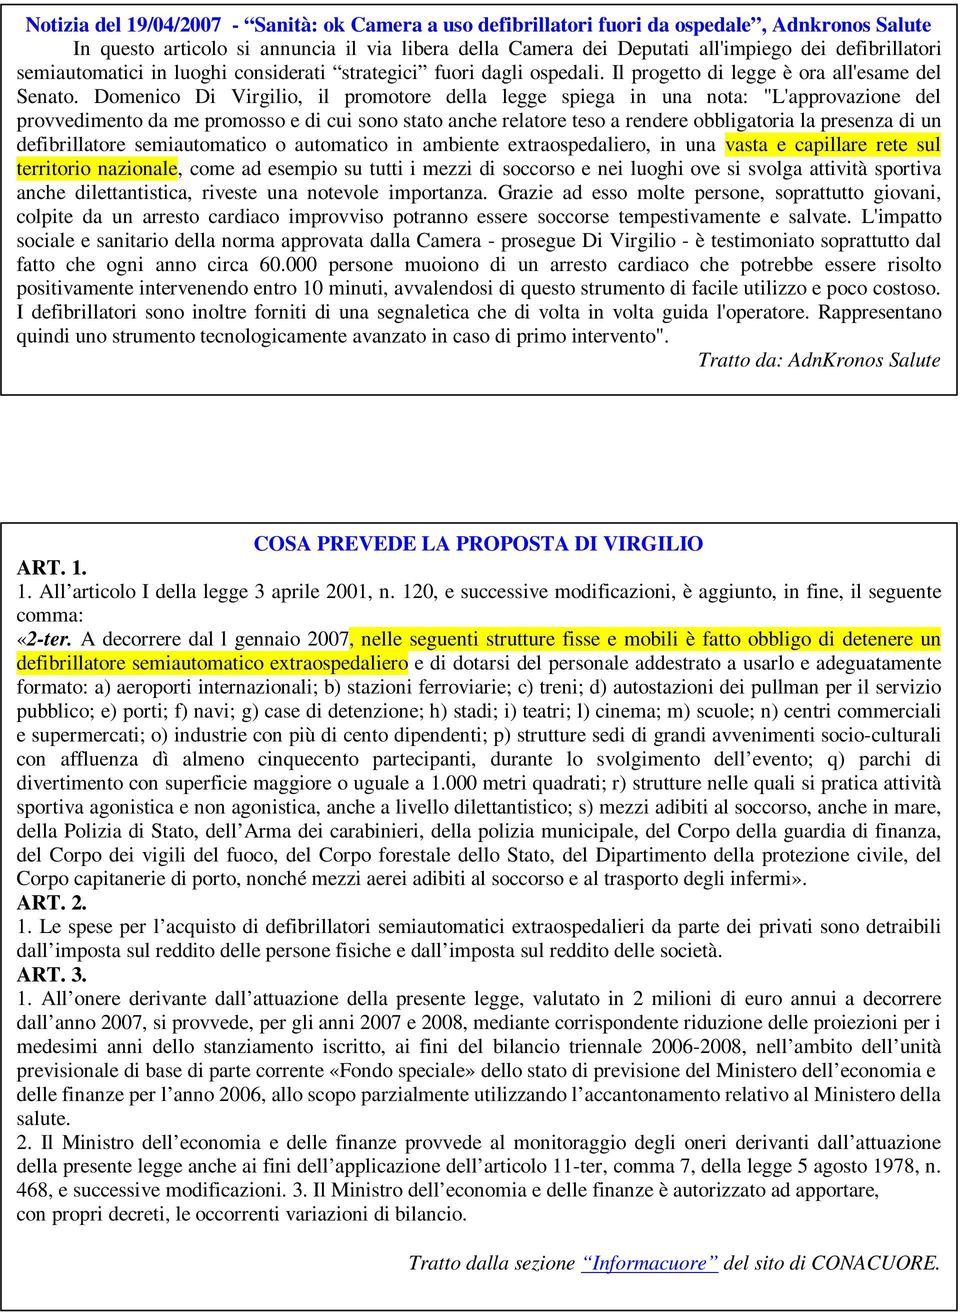 Domenico Di Virgilio, il promotore della legge spiega in una nota: "L'approvazione del provvedimento da me promosso e di cui sono stato anche relatore teso a rendere obbligatoria la presenza di un